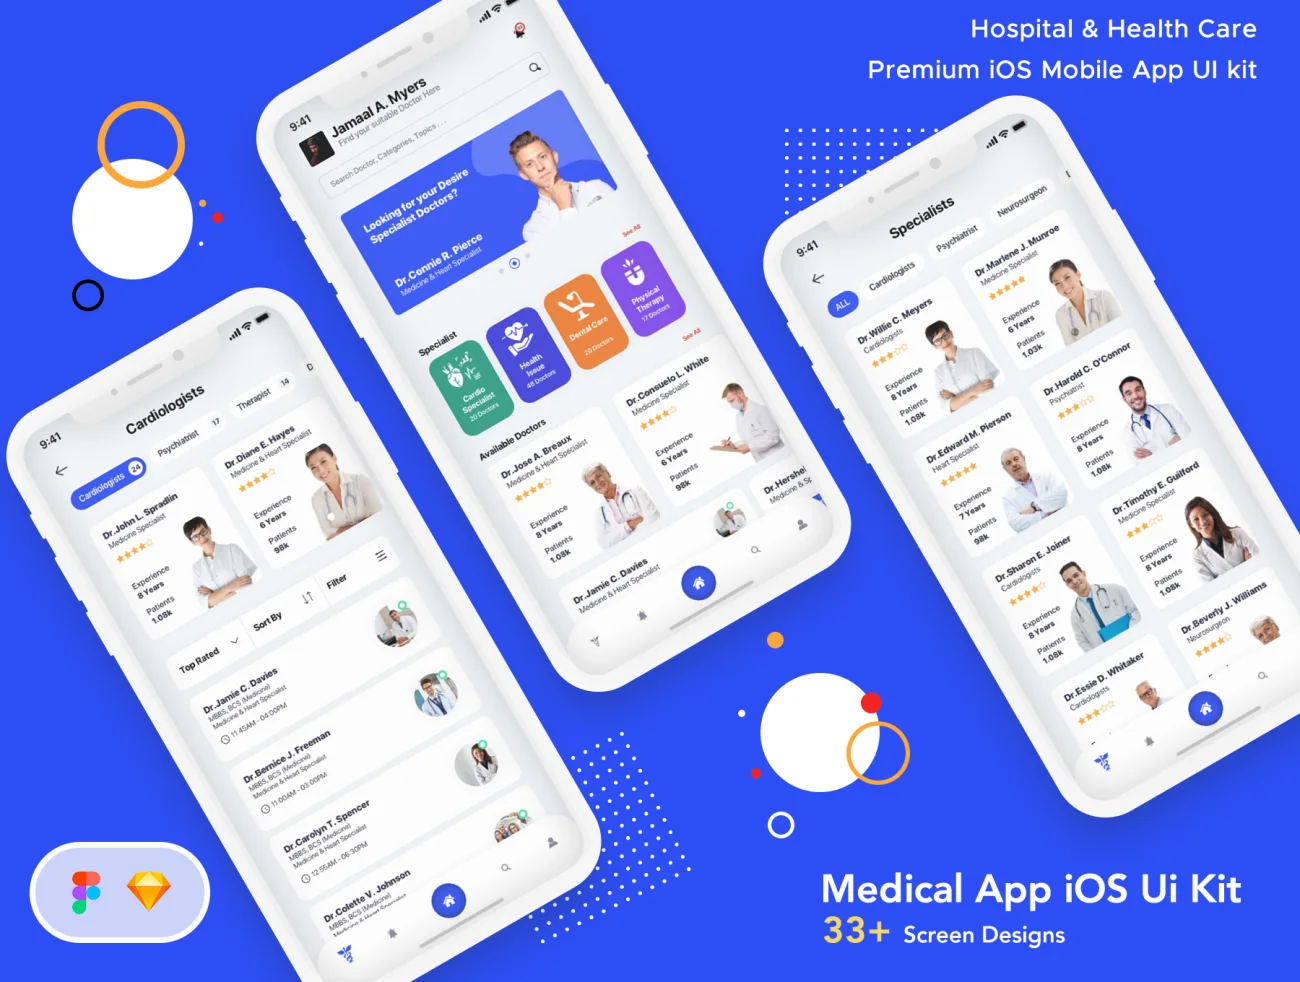 Hospital _ HealthCare Mobile App UI 33屏医院与医疗保健移动应用程序用户界面-UI/UX、ui套件、列表、卡片式、图表、地图、应用、日历、注册、网购、聊天、表单、详情、预订-到位啦UI